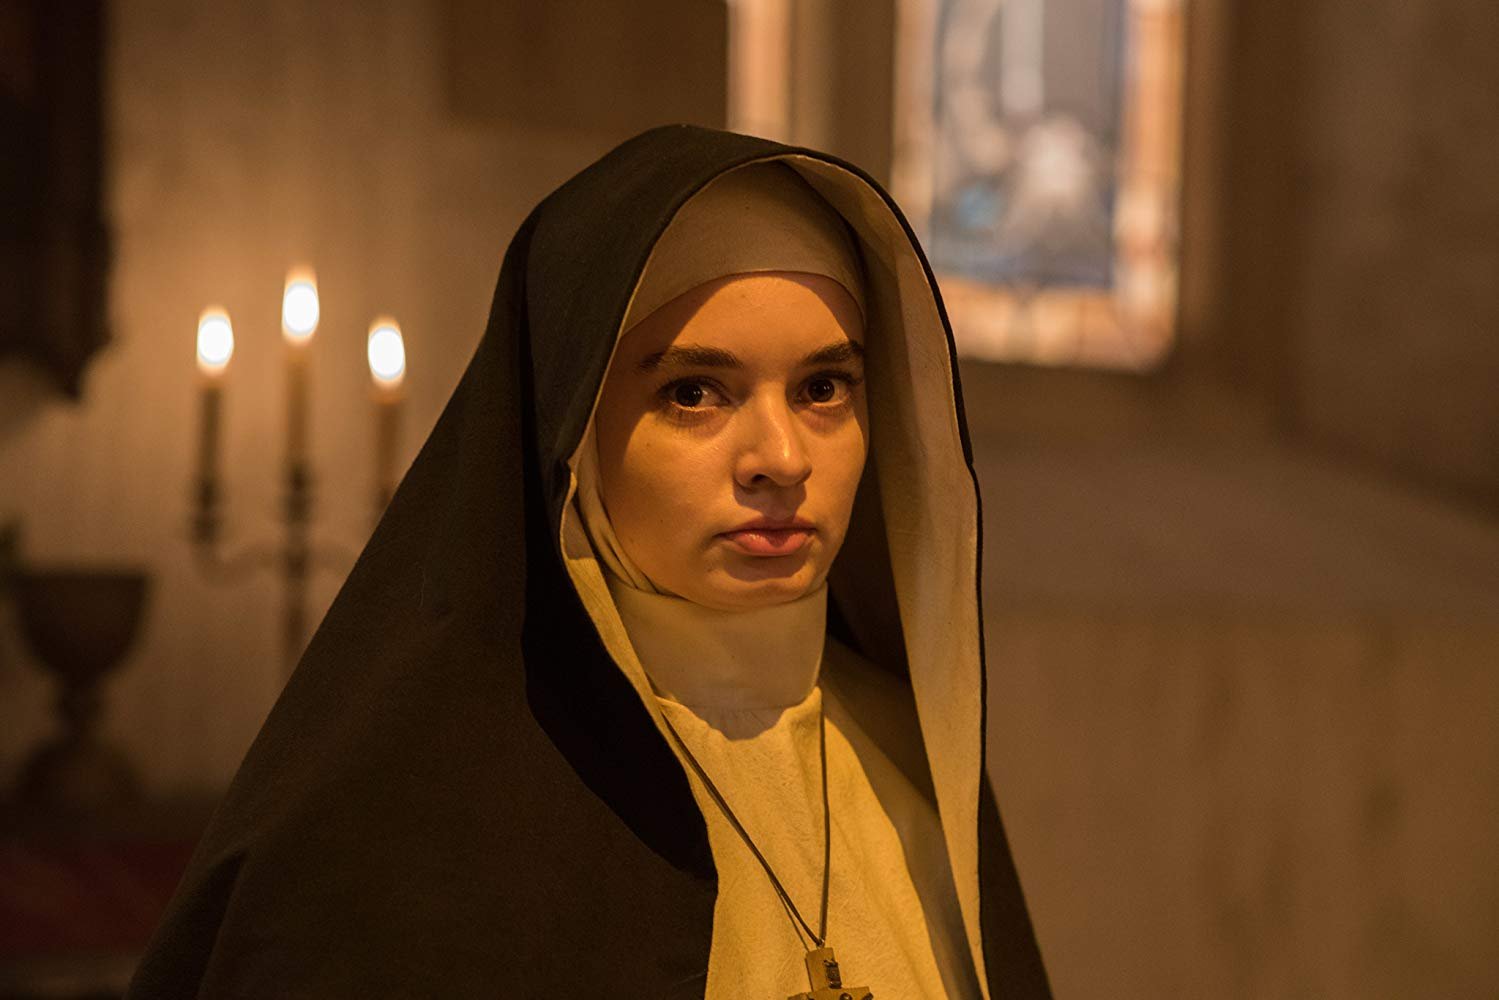 英格丽毕苏最为人所知的作品就是老公温子仁监制的《鬼修女》修女一角。